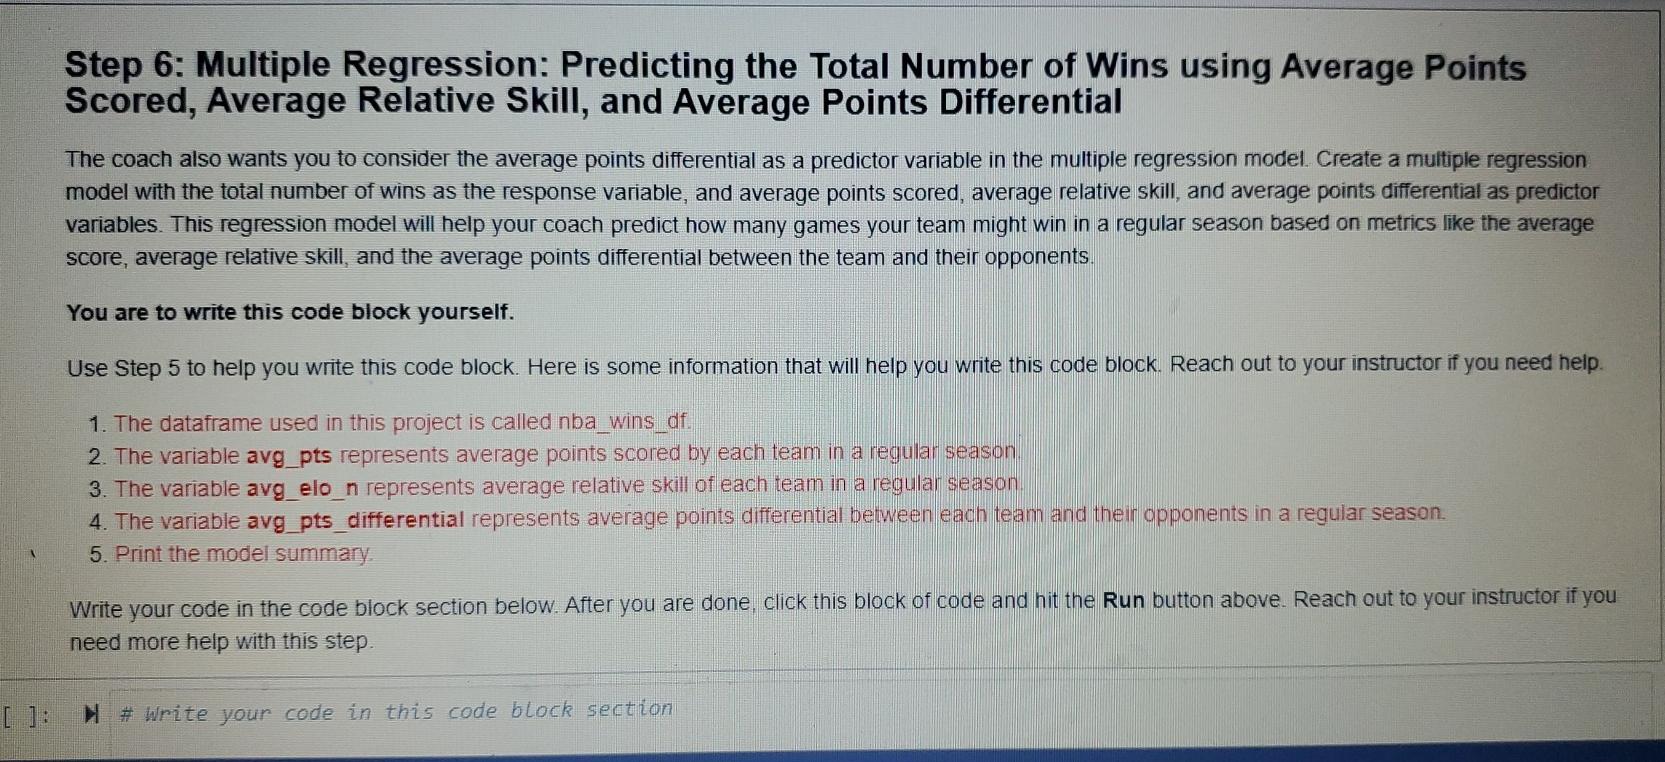 Predict 5 Correct Scores For Free To Win #5,000,000 Simply Predict